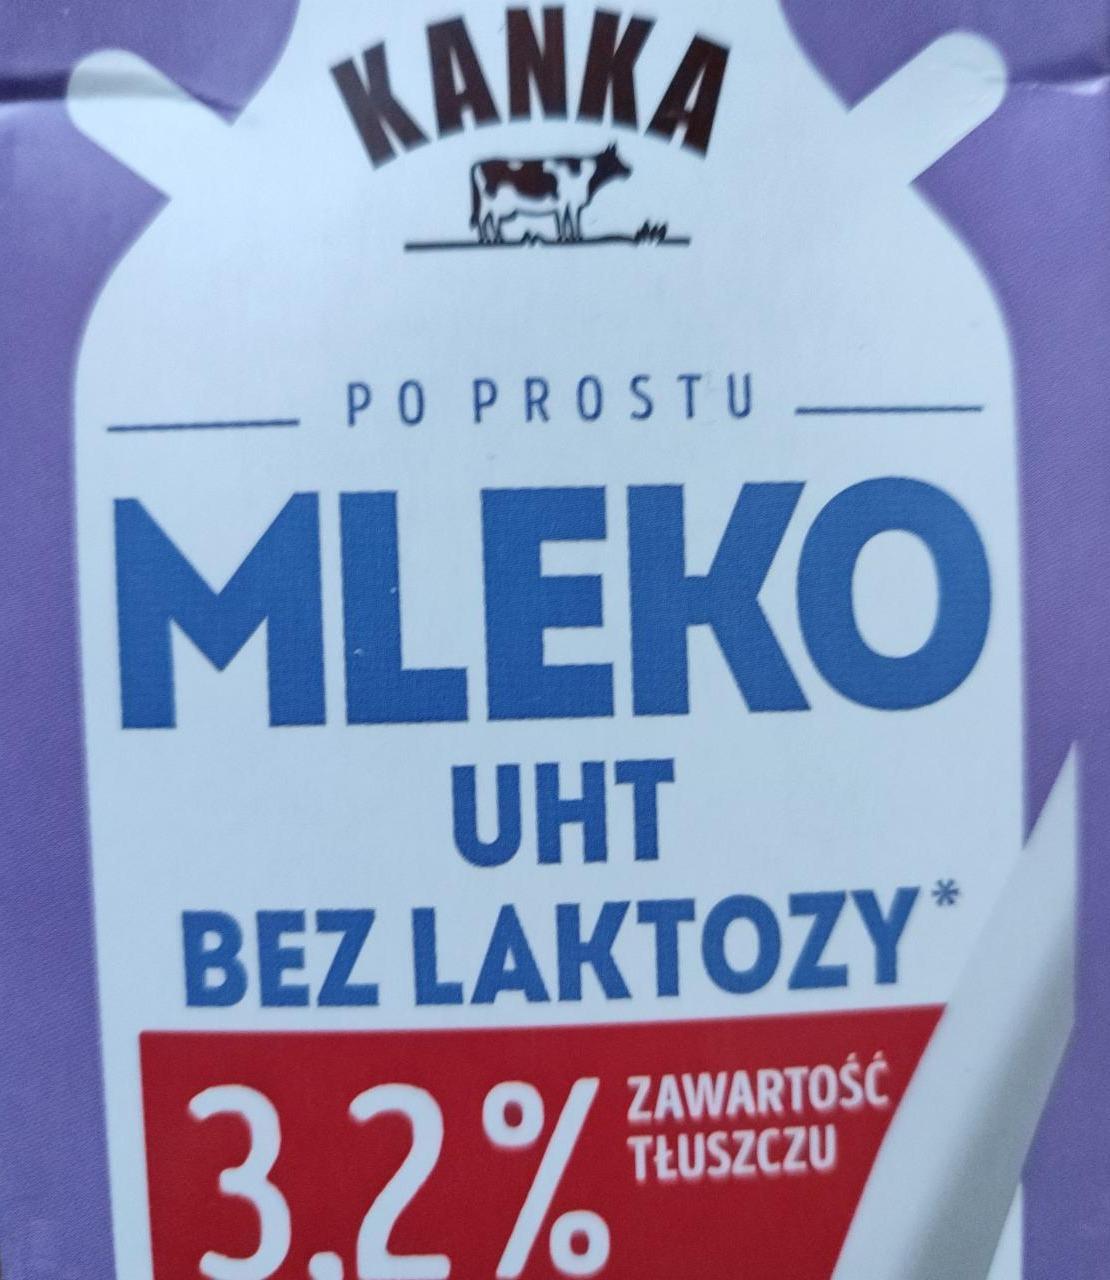 Zdjęcia - mleko UHT bez laktozy 3.2% Kanka